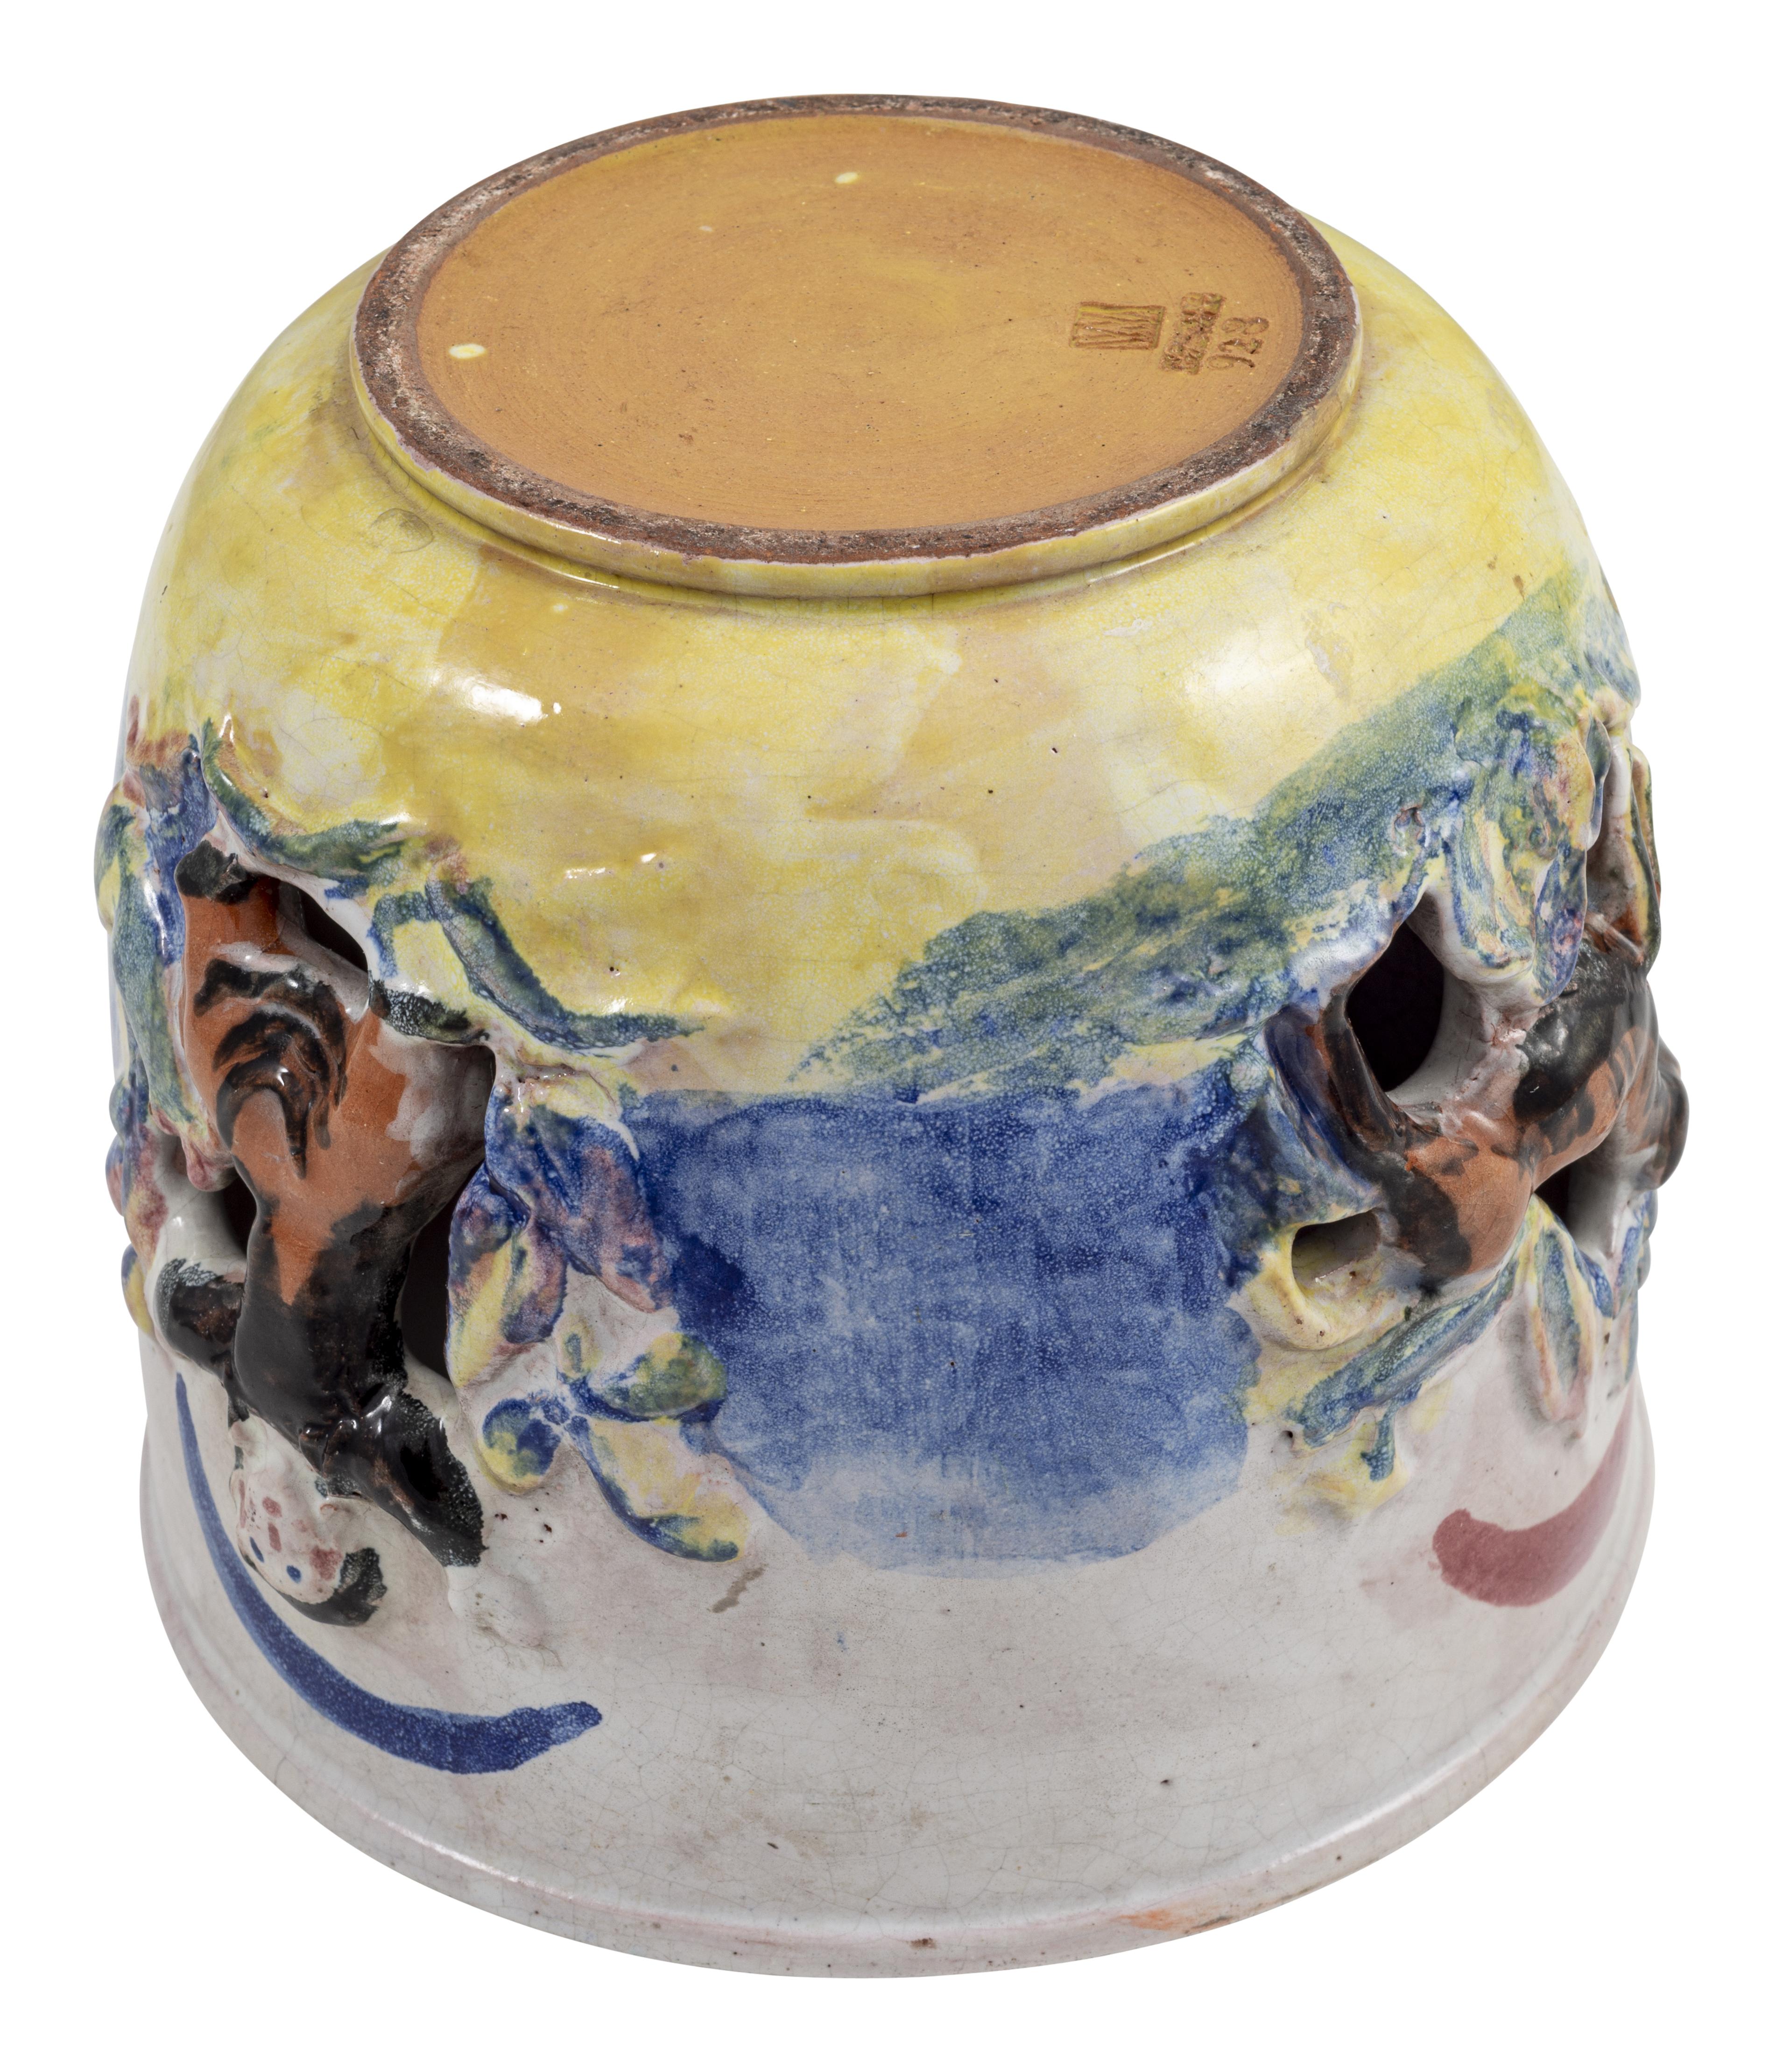 Jugendstil Cachepot Ceramics Colorfully Glazed Wiener Werkstatte Singer circa 1928 Austria For Sale